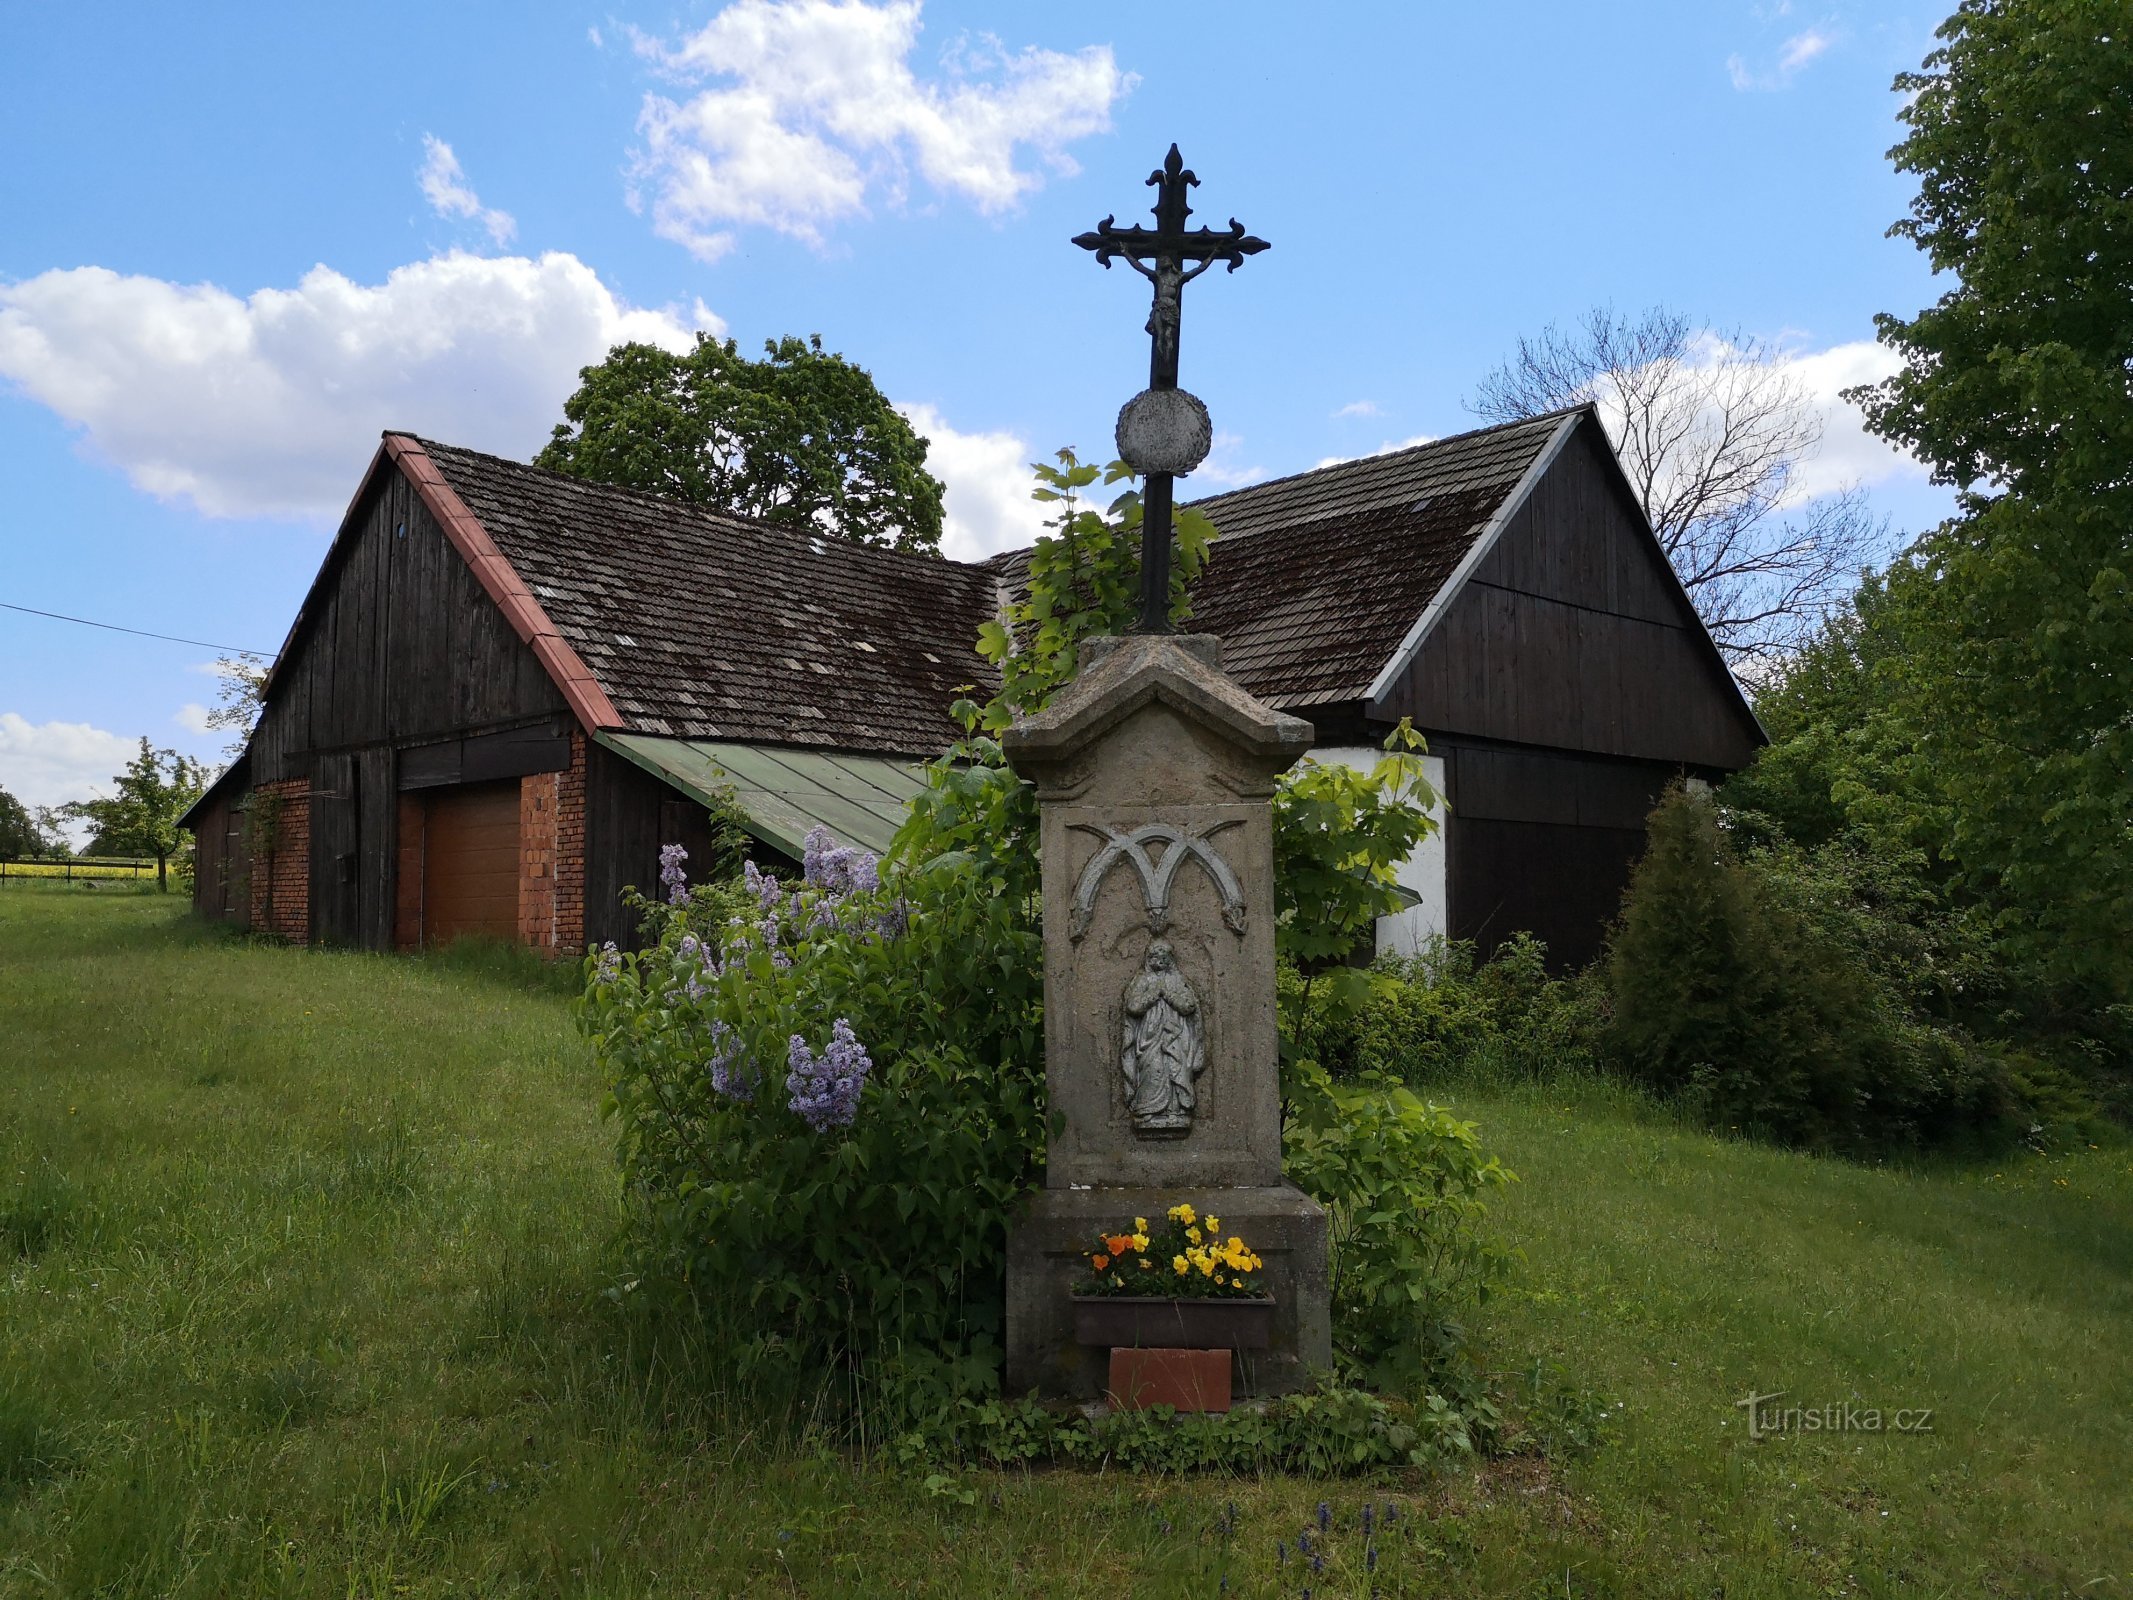 Krzyż we wsi Studénka (Horní Radechová)